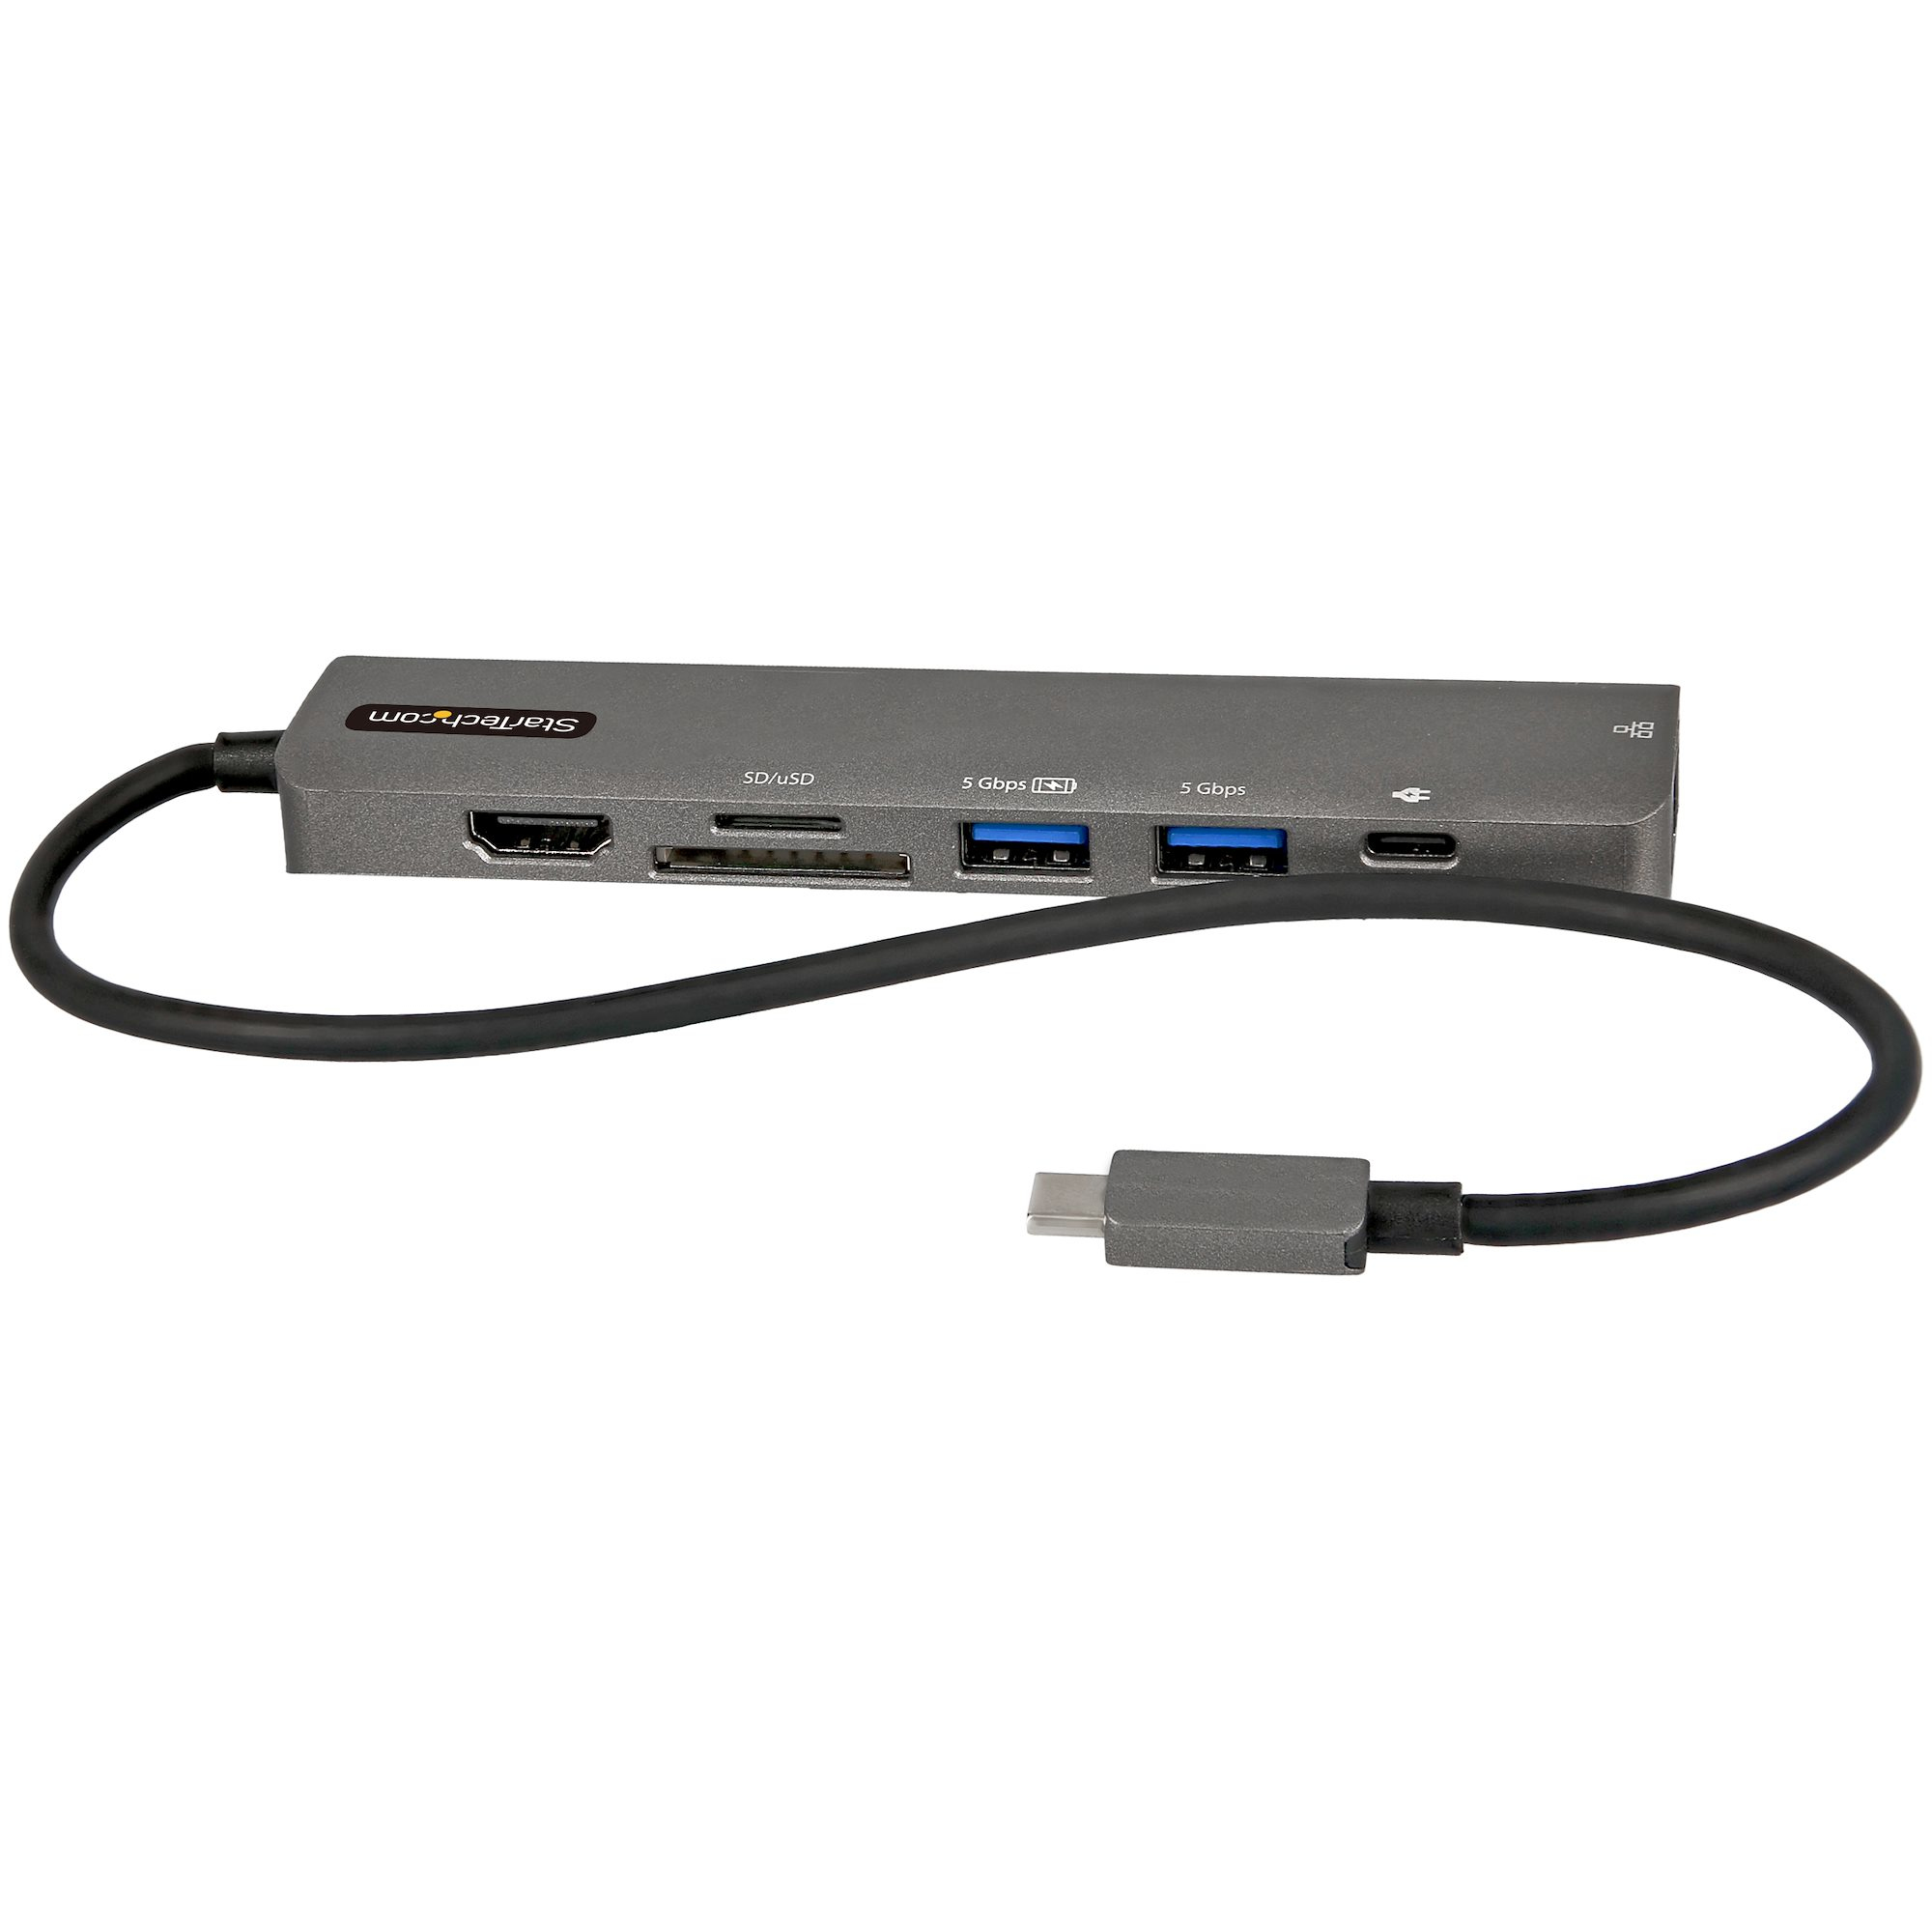 Image of StarTech.com Adattatore multiporta USB C - Da USB-C a HDMI 2.0 4K 60Hz, 100W Power Delivery Pass-through, slot SD/MicroSD, Hub USB 3.0 a 2 porte - USB Type-C Mini Dock - Cavo integrato da 30cm